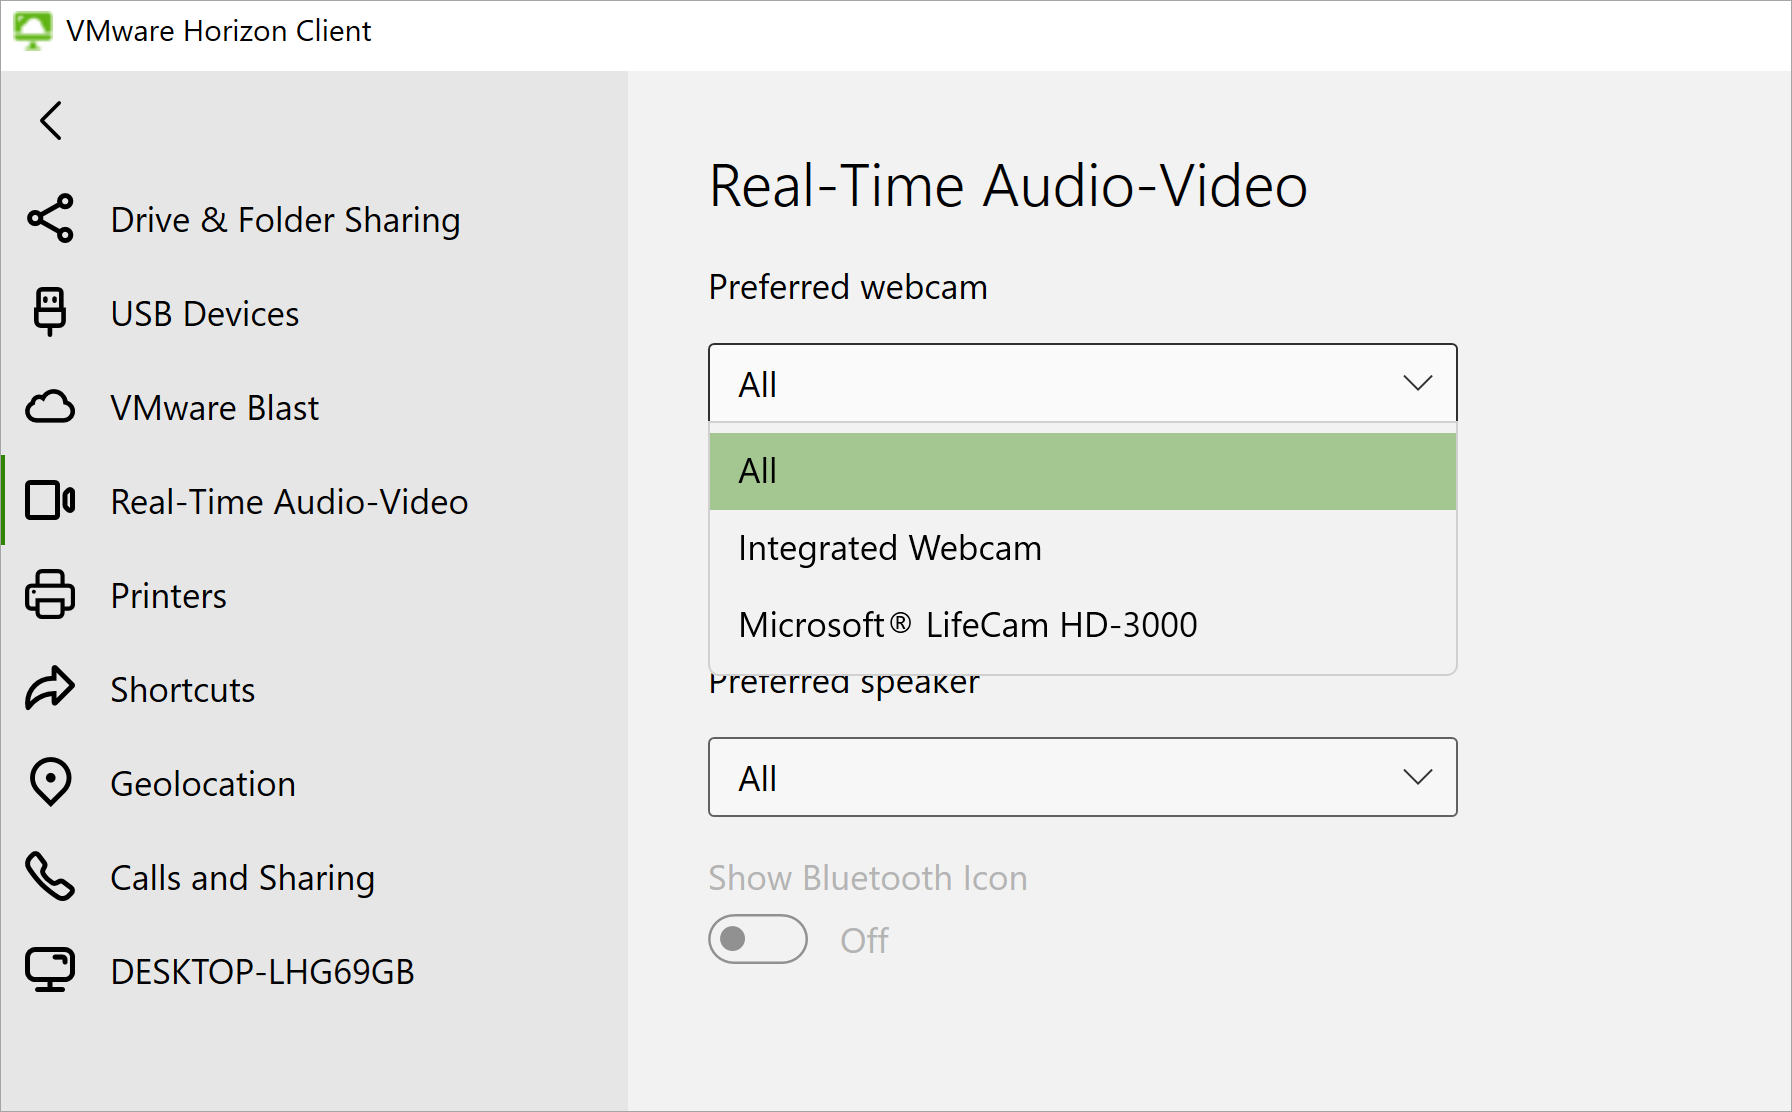 실시간 오디오-비디오 설정에는 호환되는 웹캠 디바이스가 두 개 있는 드롭다운 메뉴가 표시됩니다.